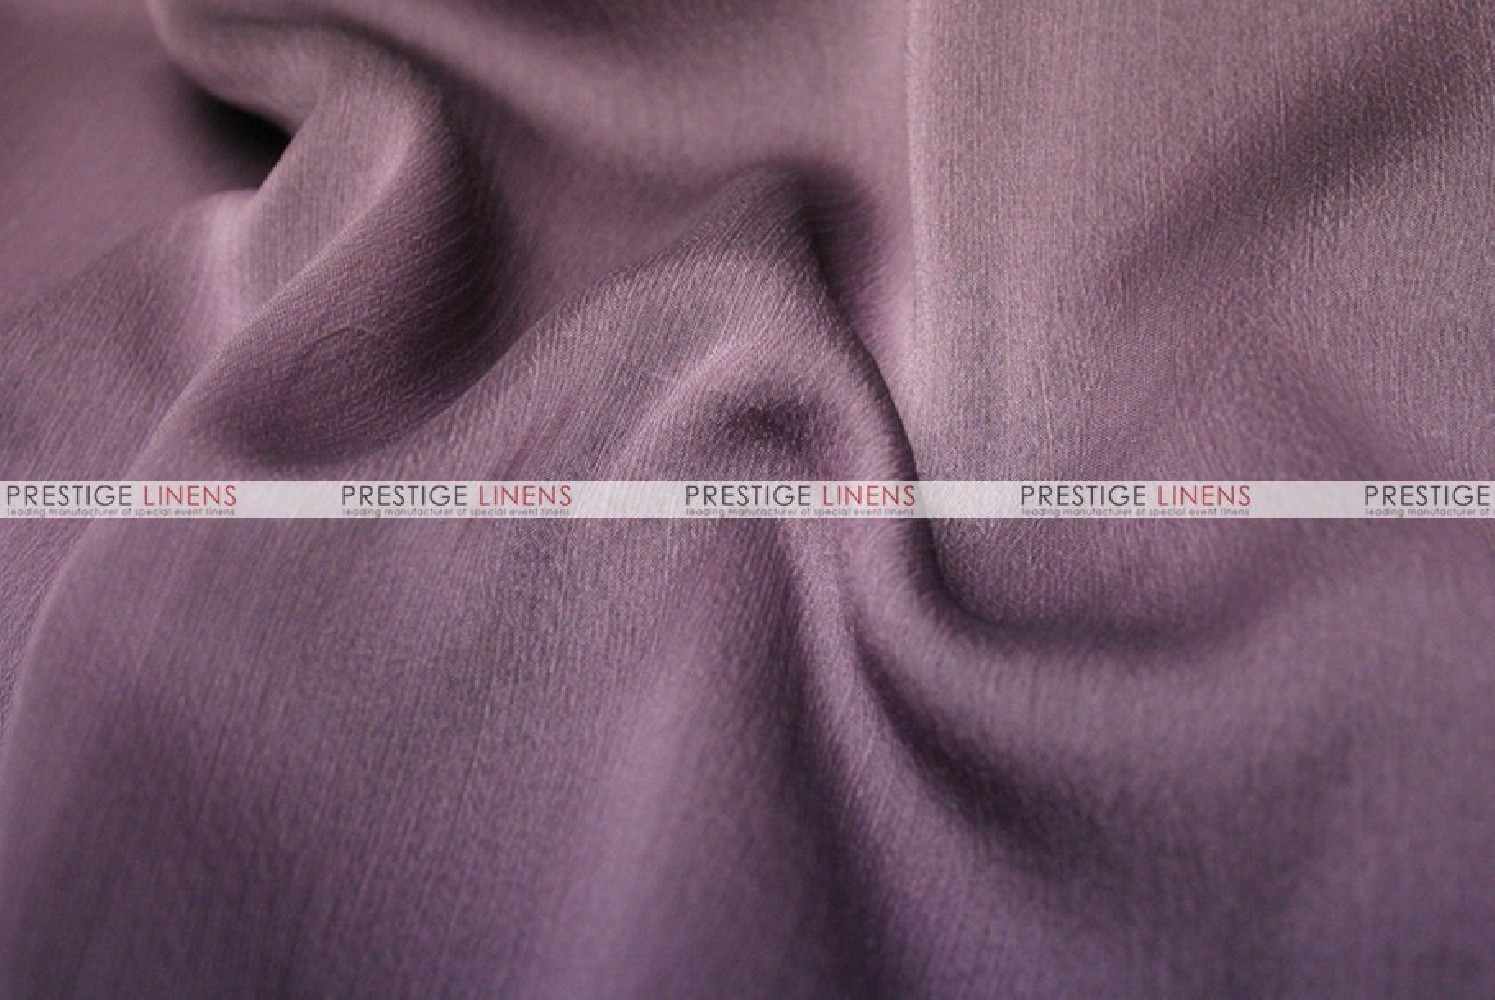 lilac chiffon fabric